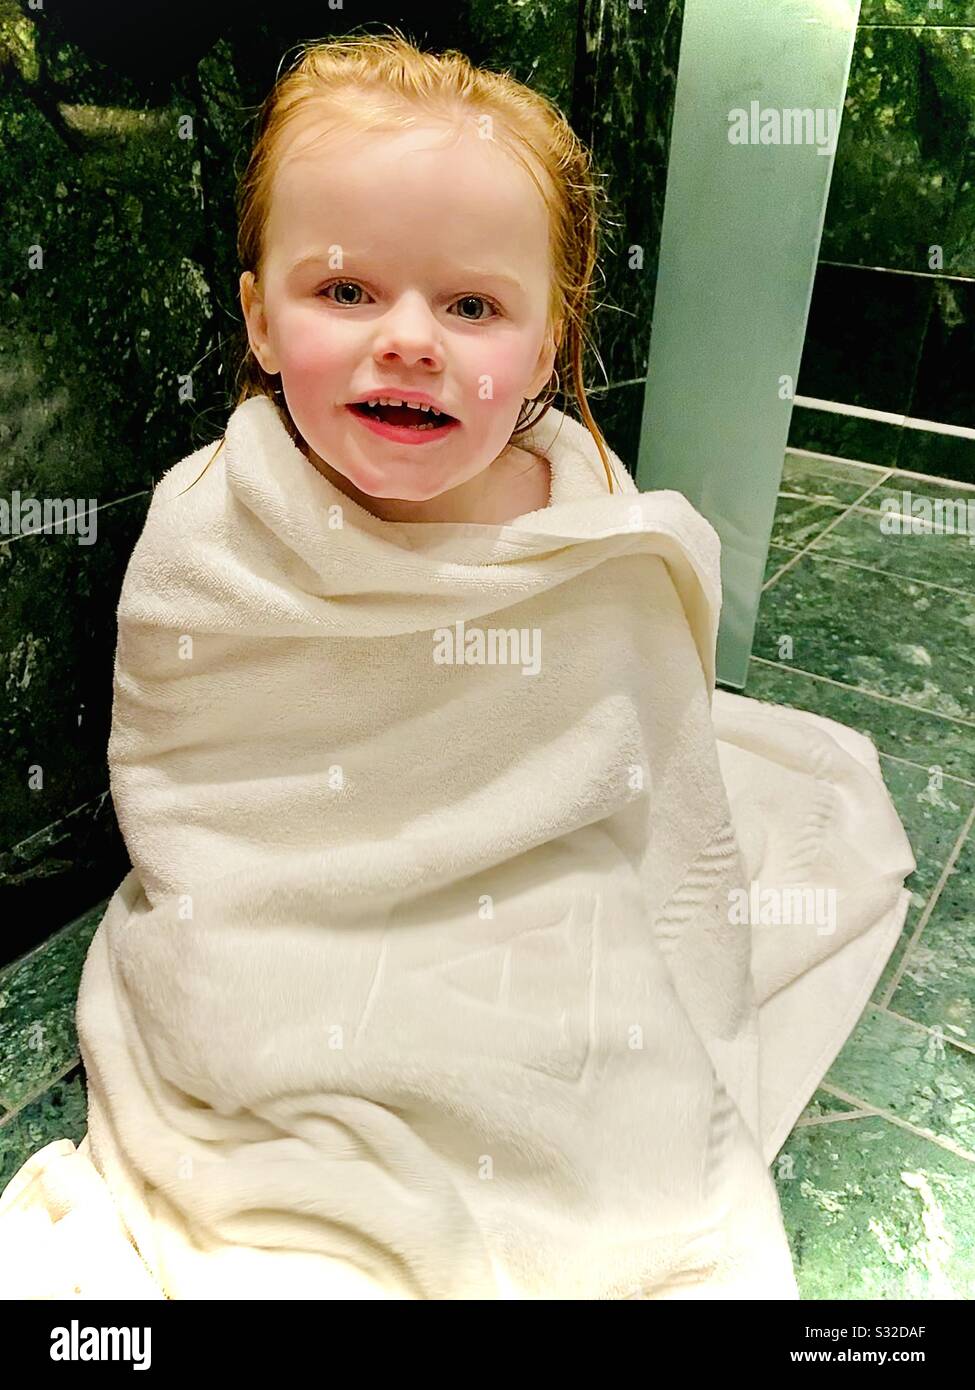 fille de 3 ans enveloppée dans une serviette hors du bain Banque D'Images